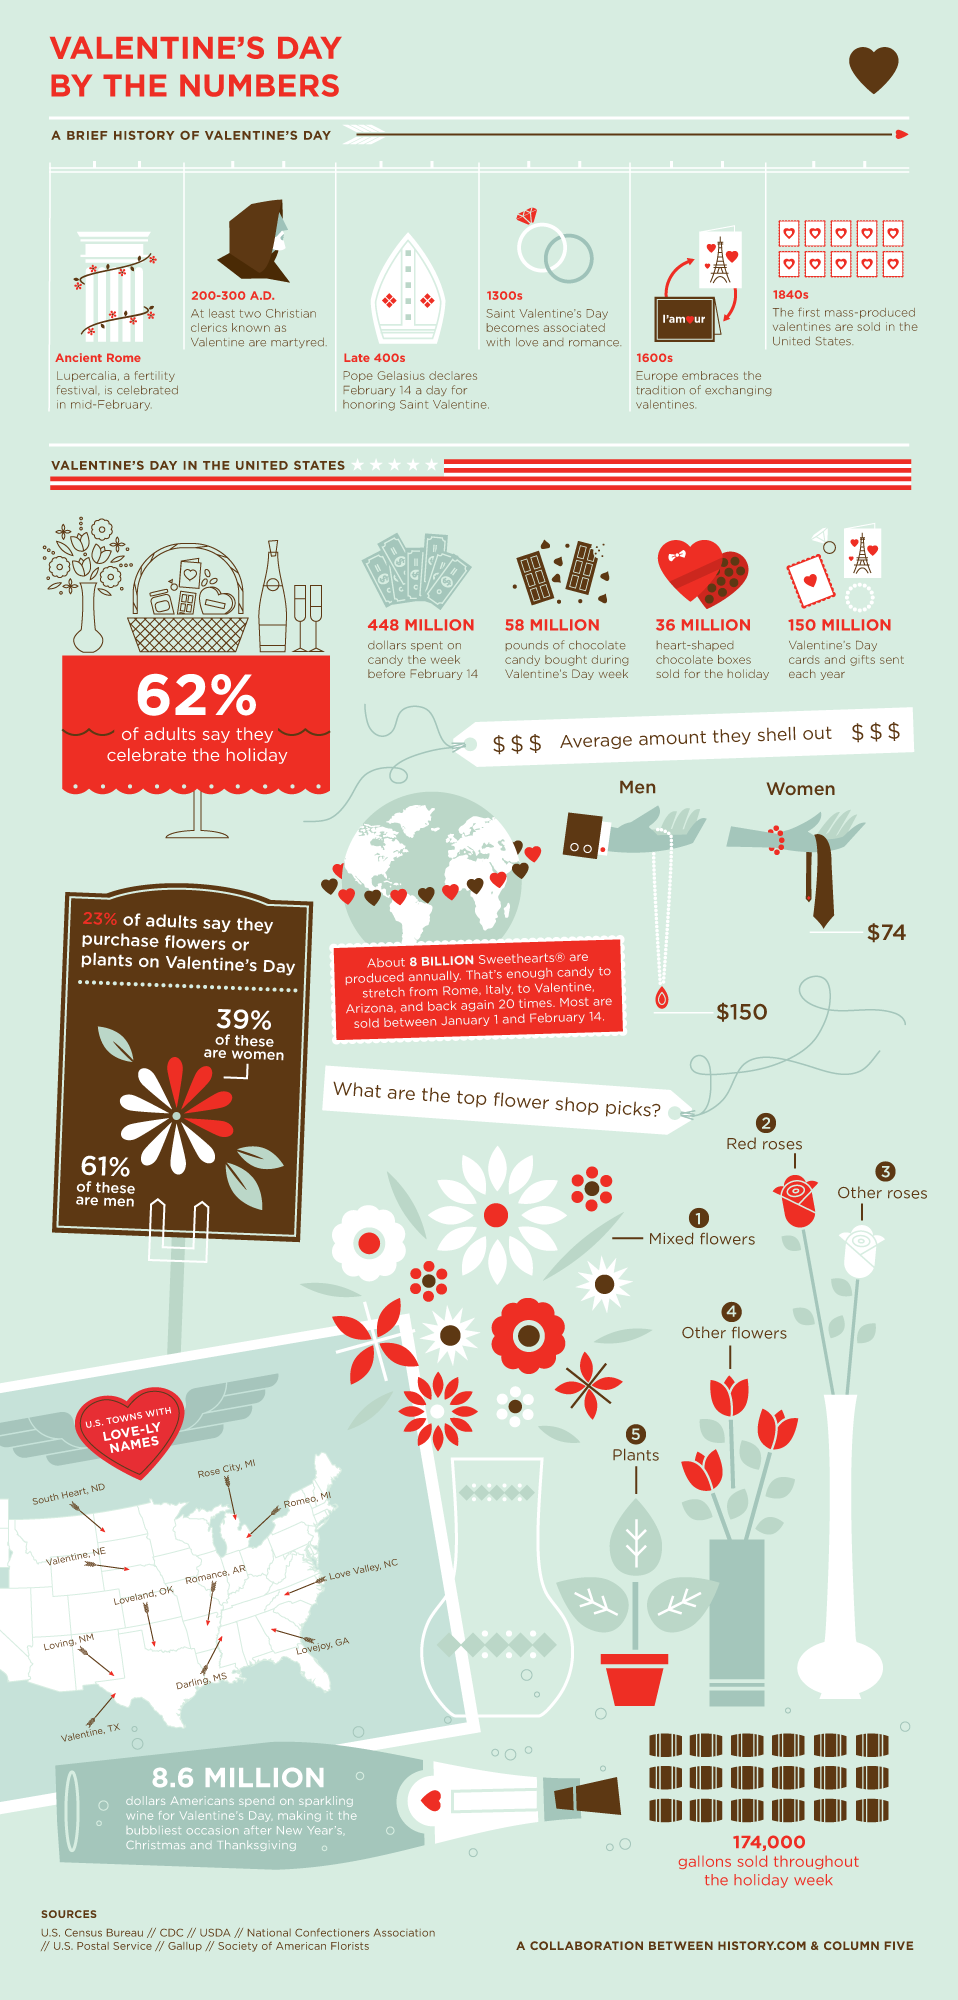 San Valentín y los números